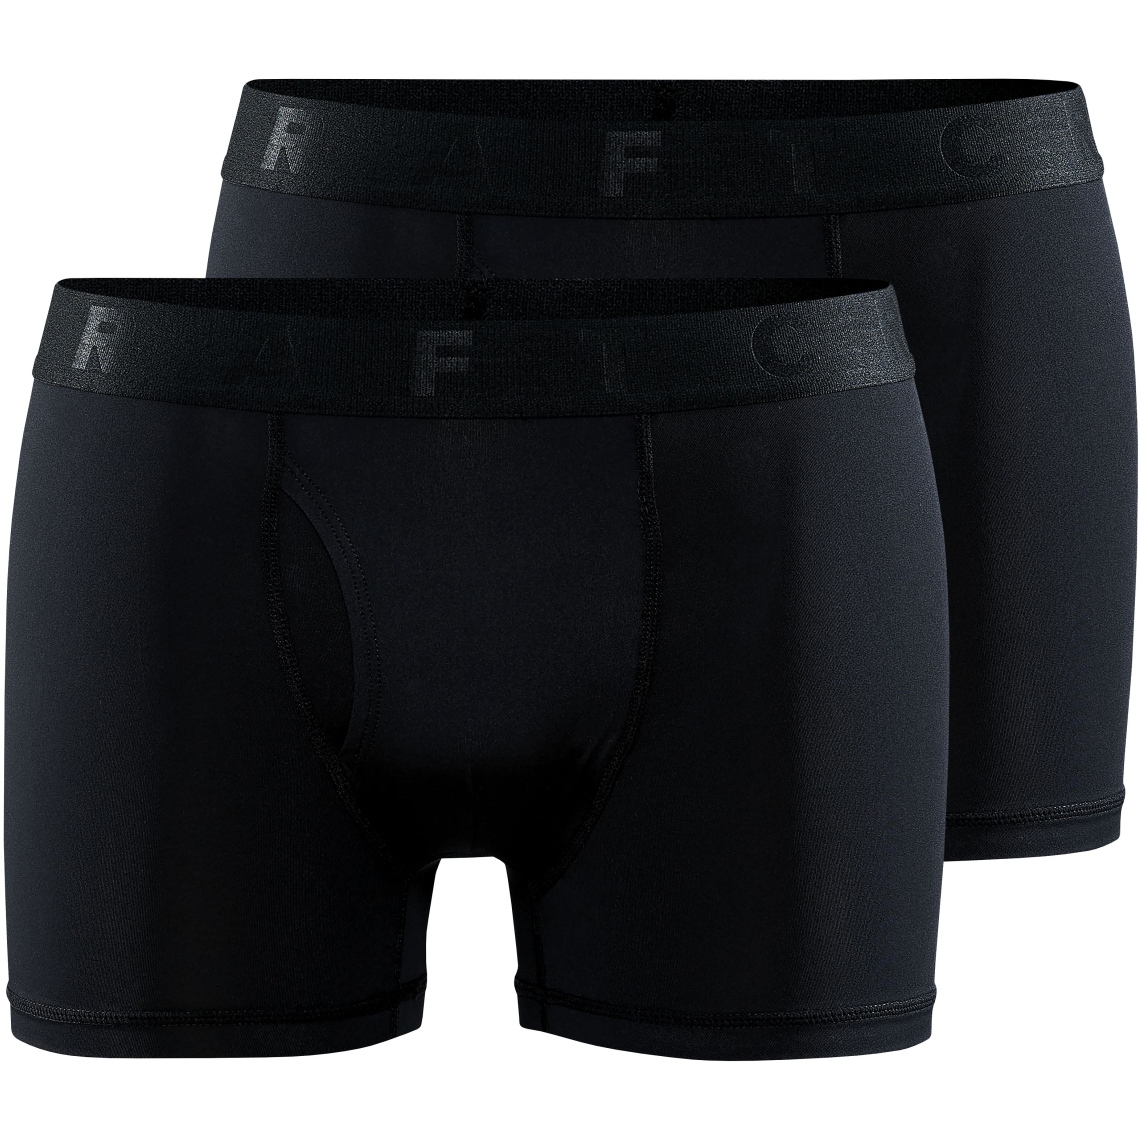 Bild von CRAFT Core Dry Herren Boxershorts 3-Inch 2er-Pack - Black